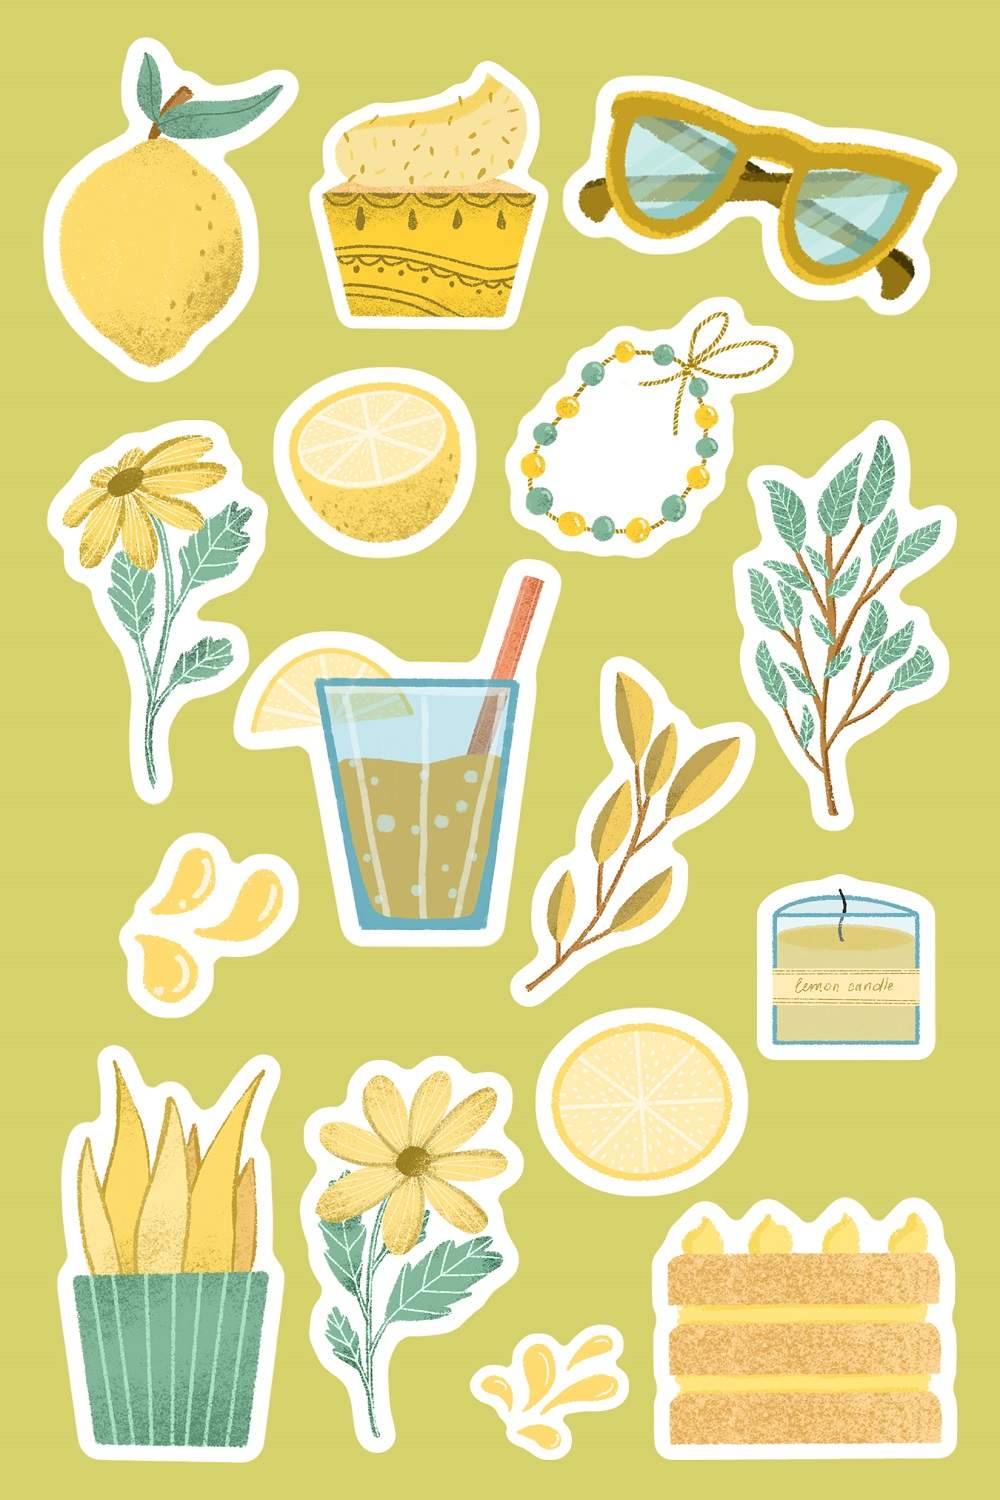 Lemonade sticker pack pinterest preview image.